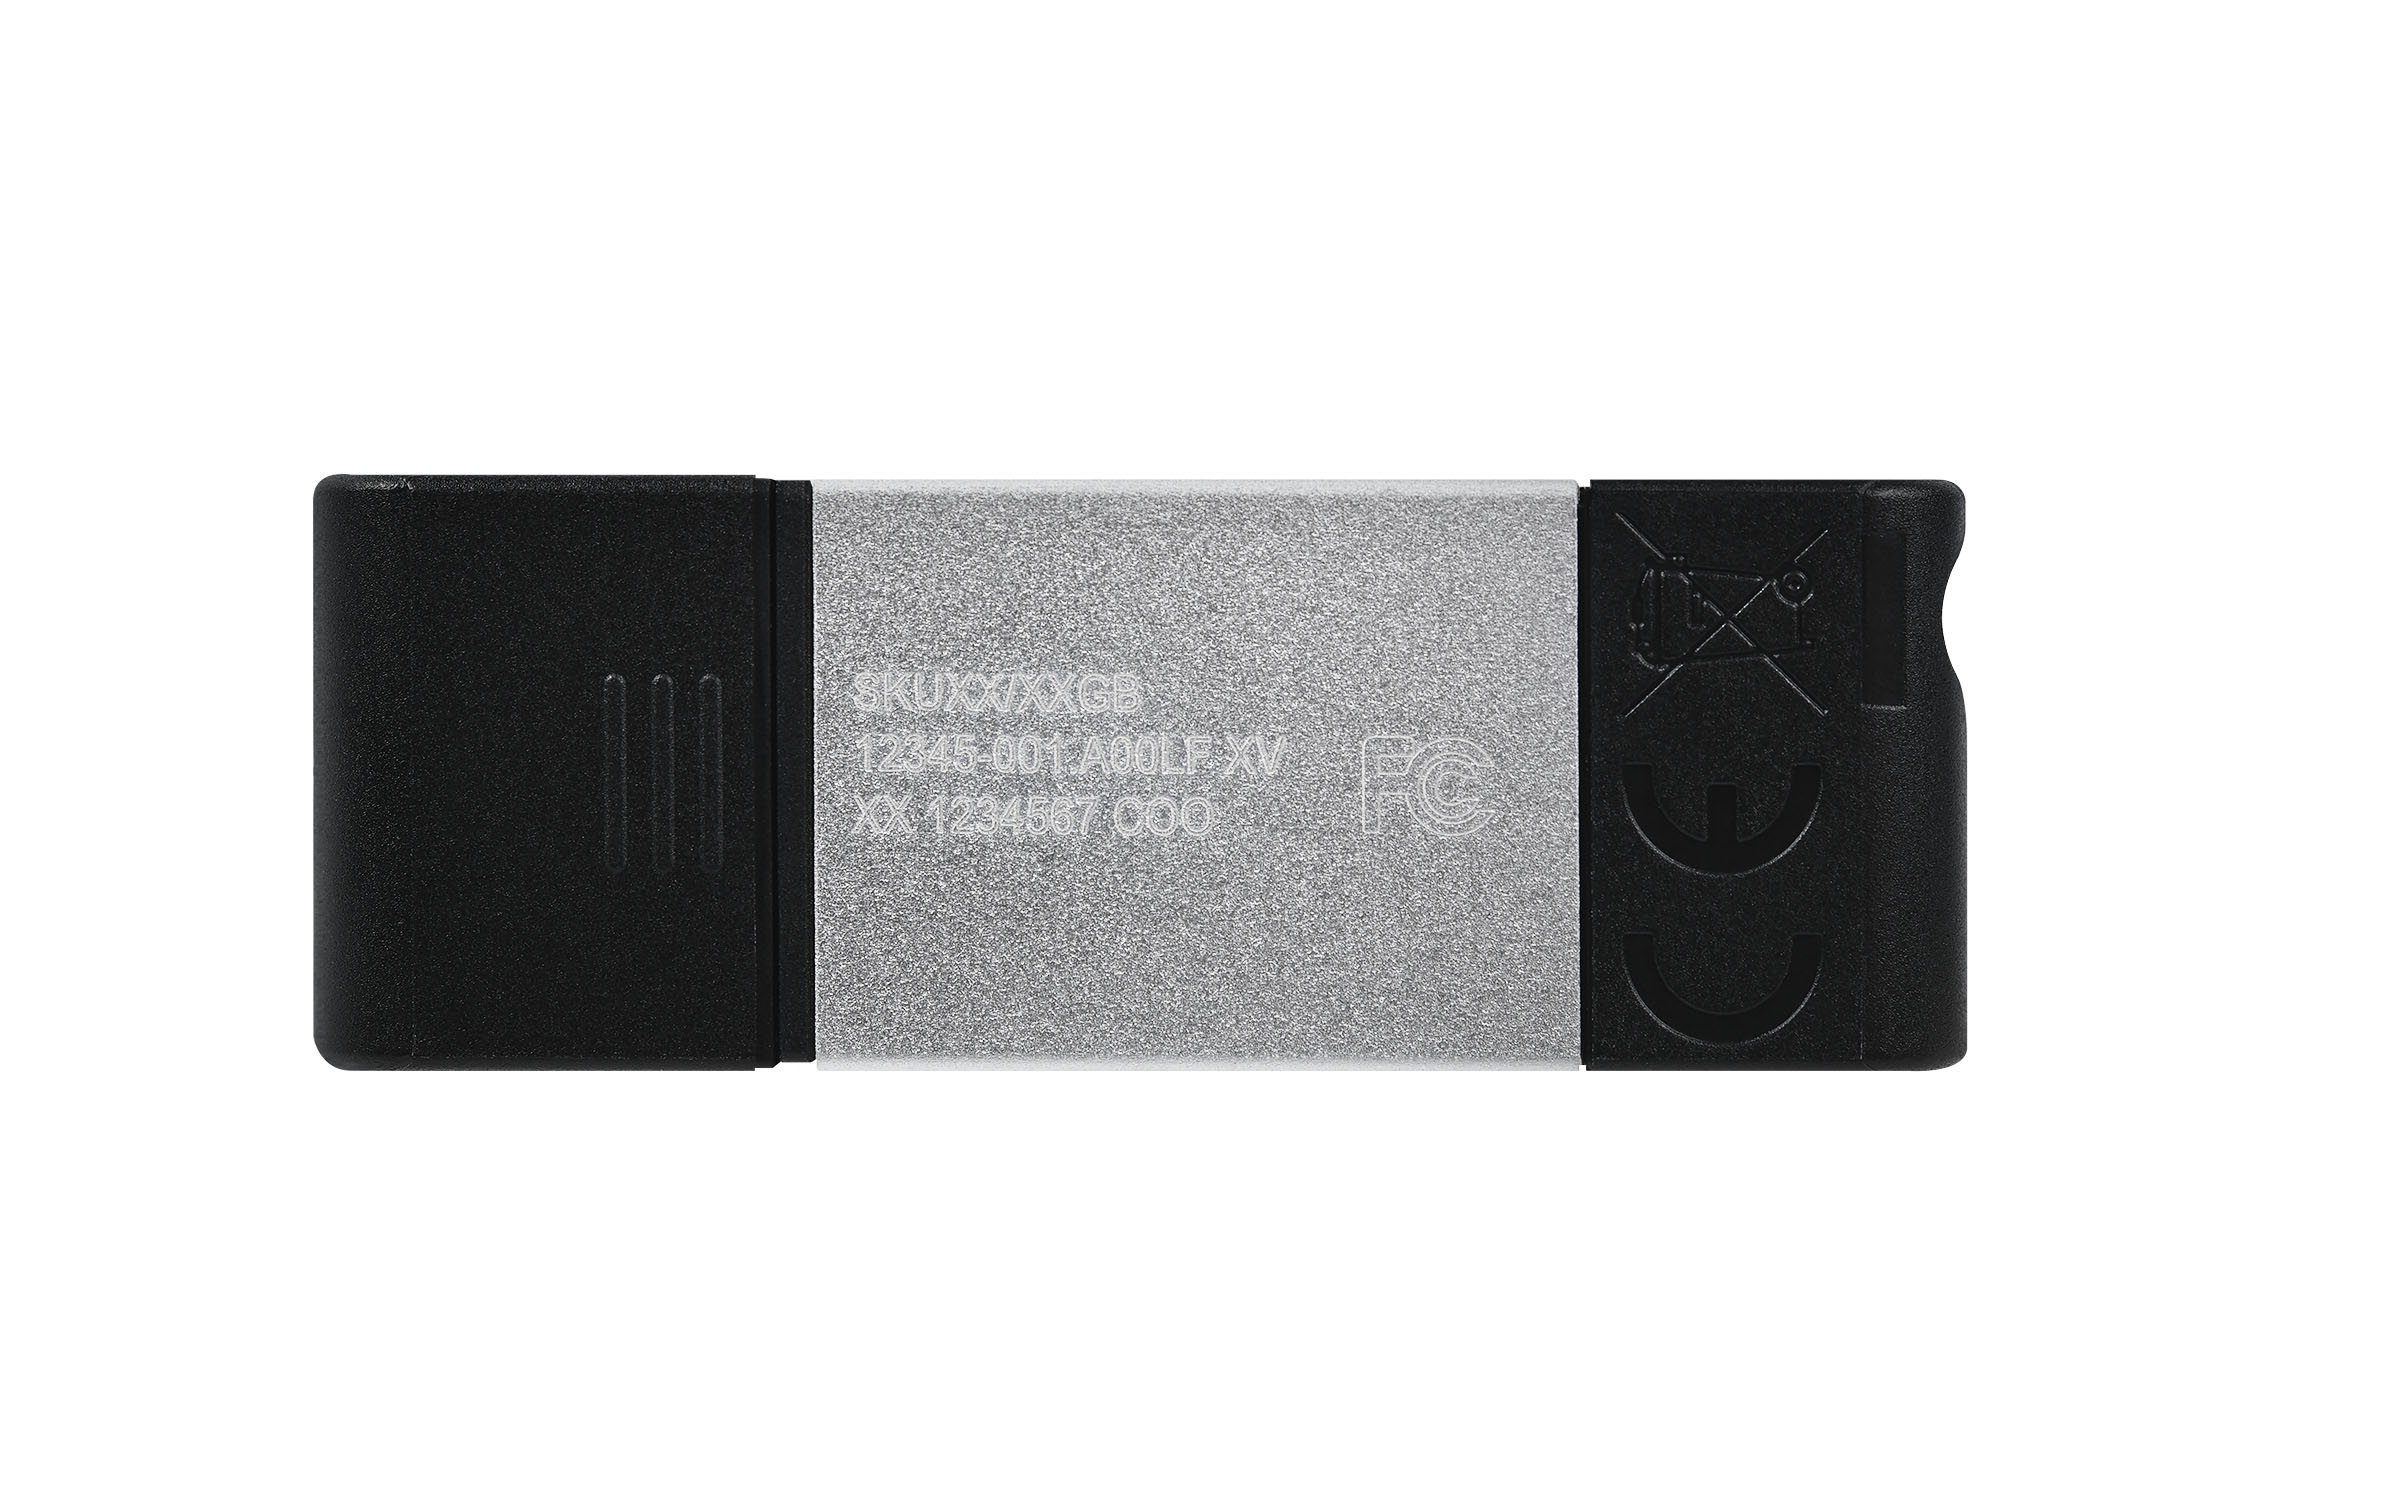 KINGSTON DT80/64GB USB Stick (Schwarz, 64 GB)